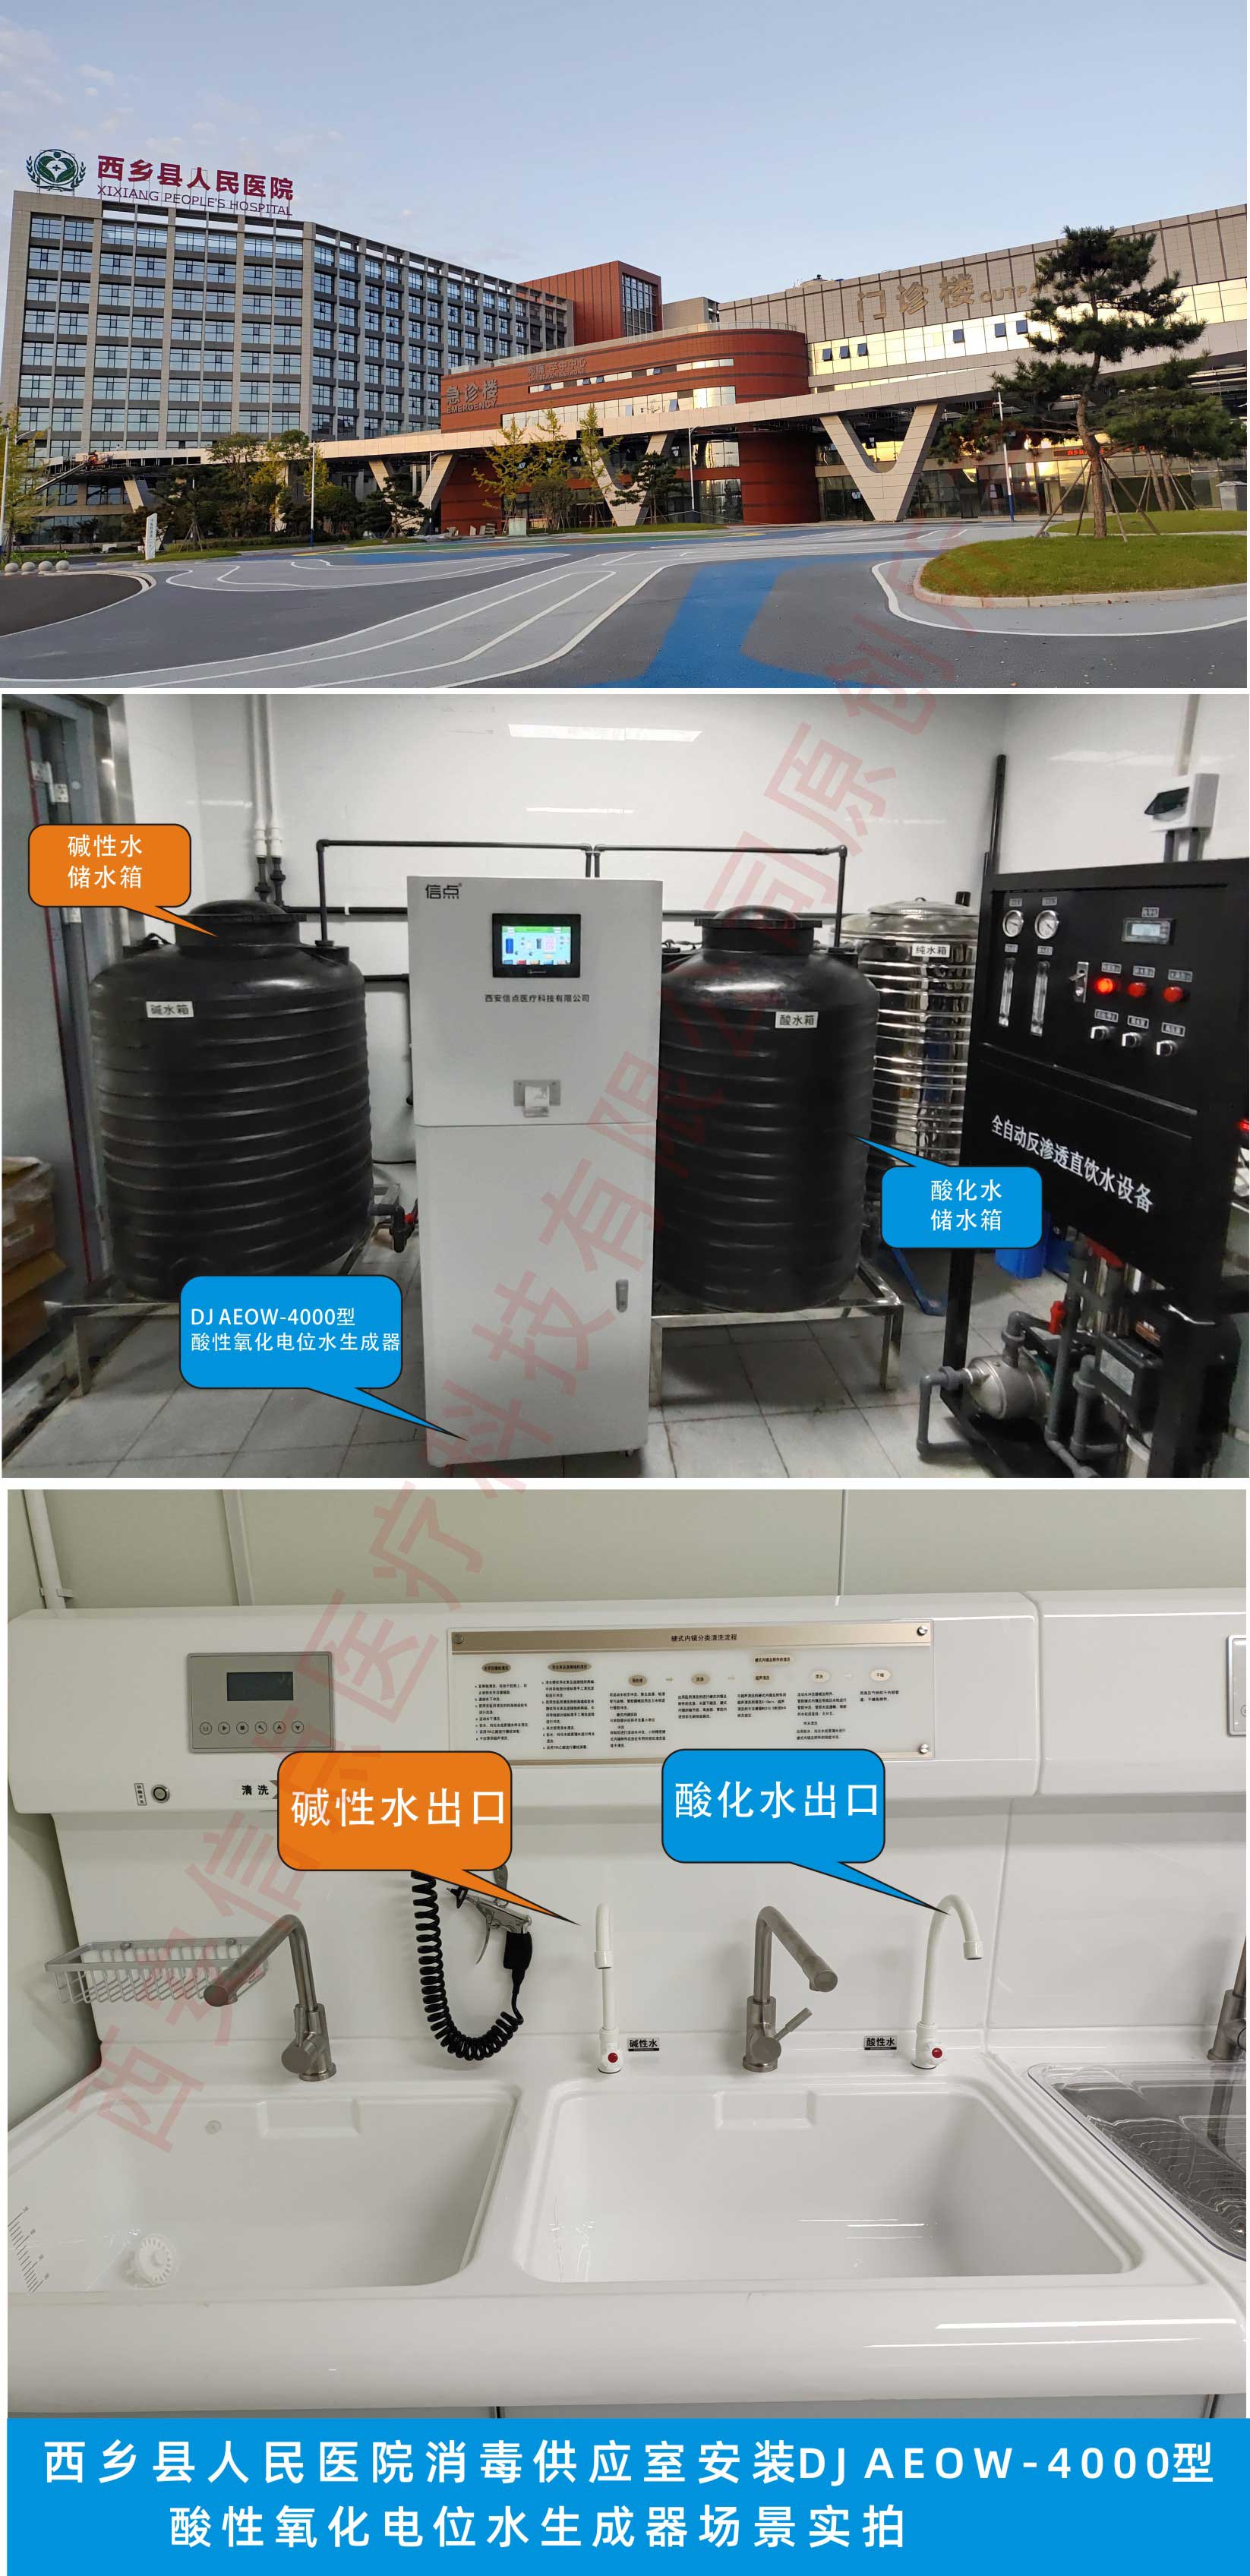 西乡县人民医院安装信点DJ AEOW-4000型酸化水生成器场景实拍(图1)